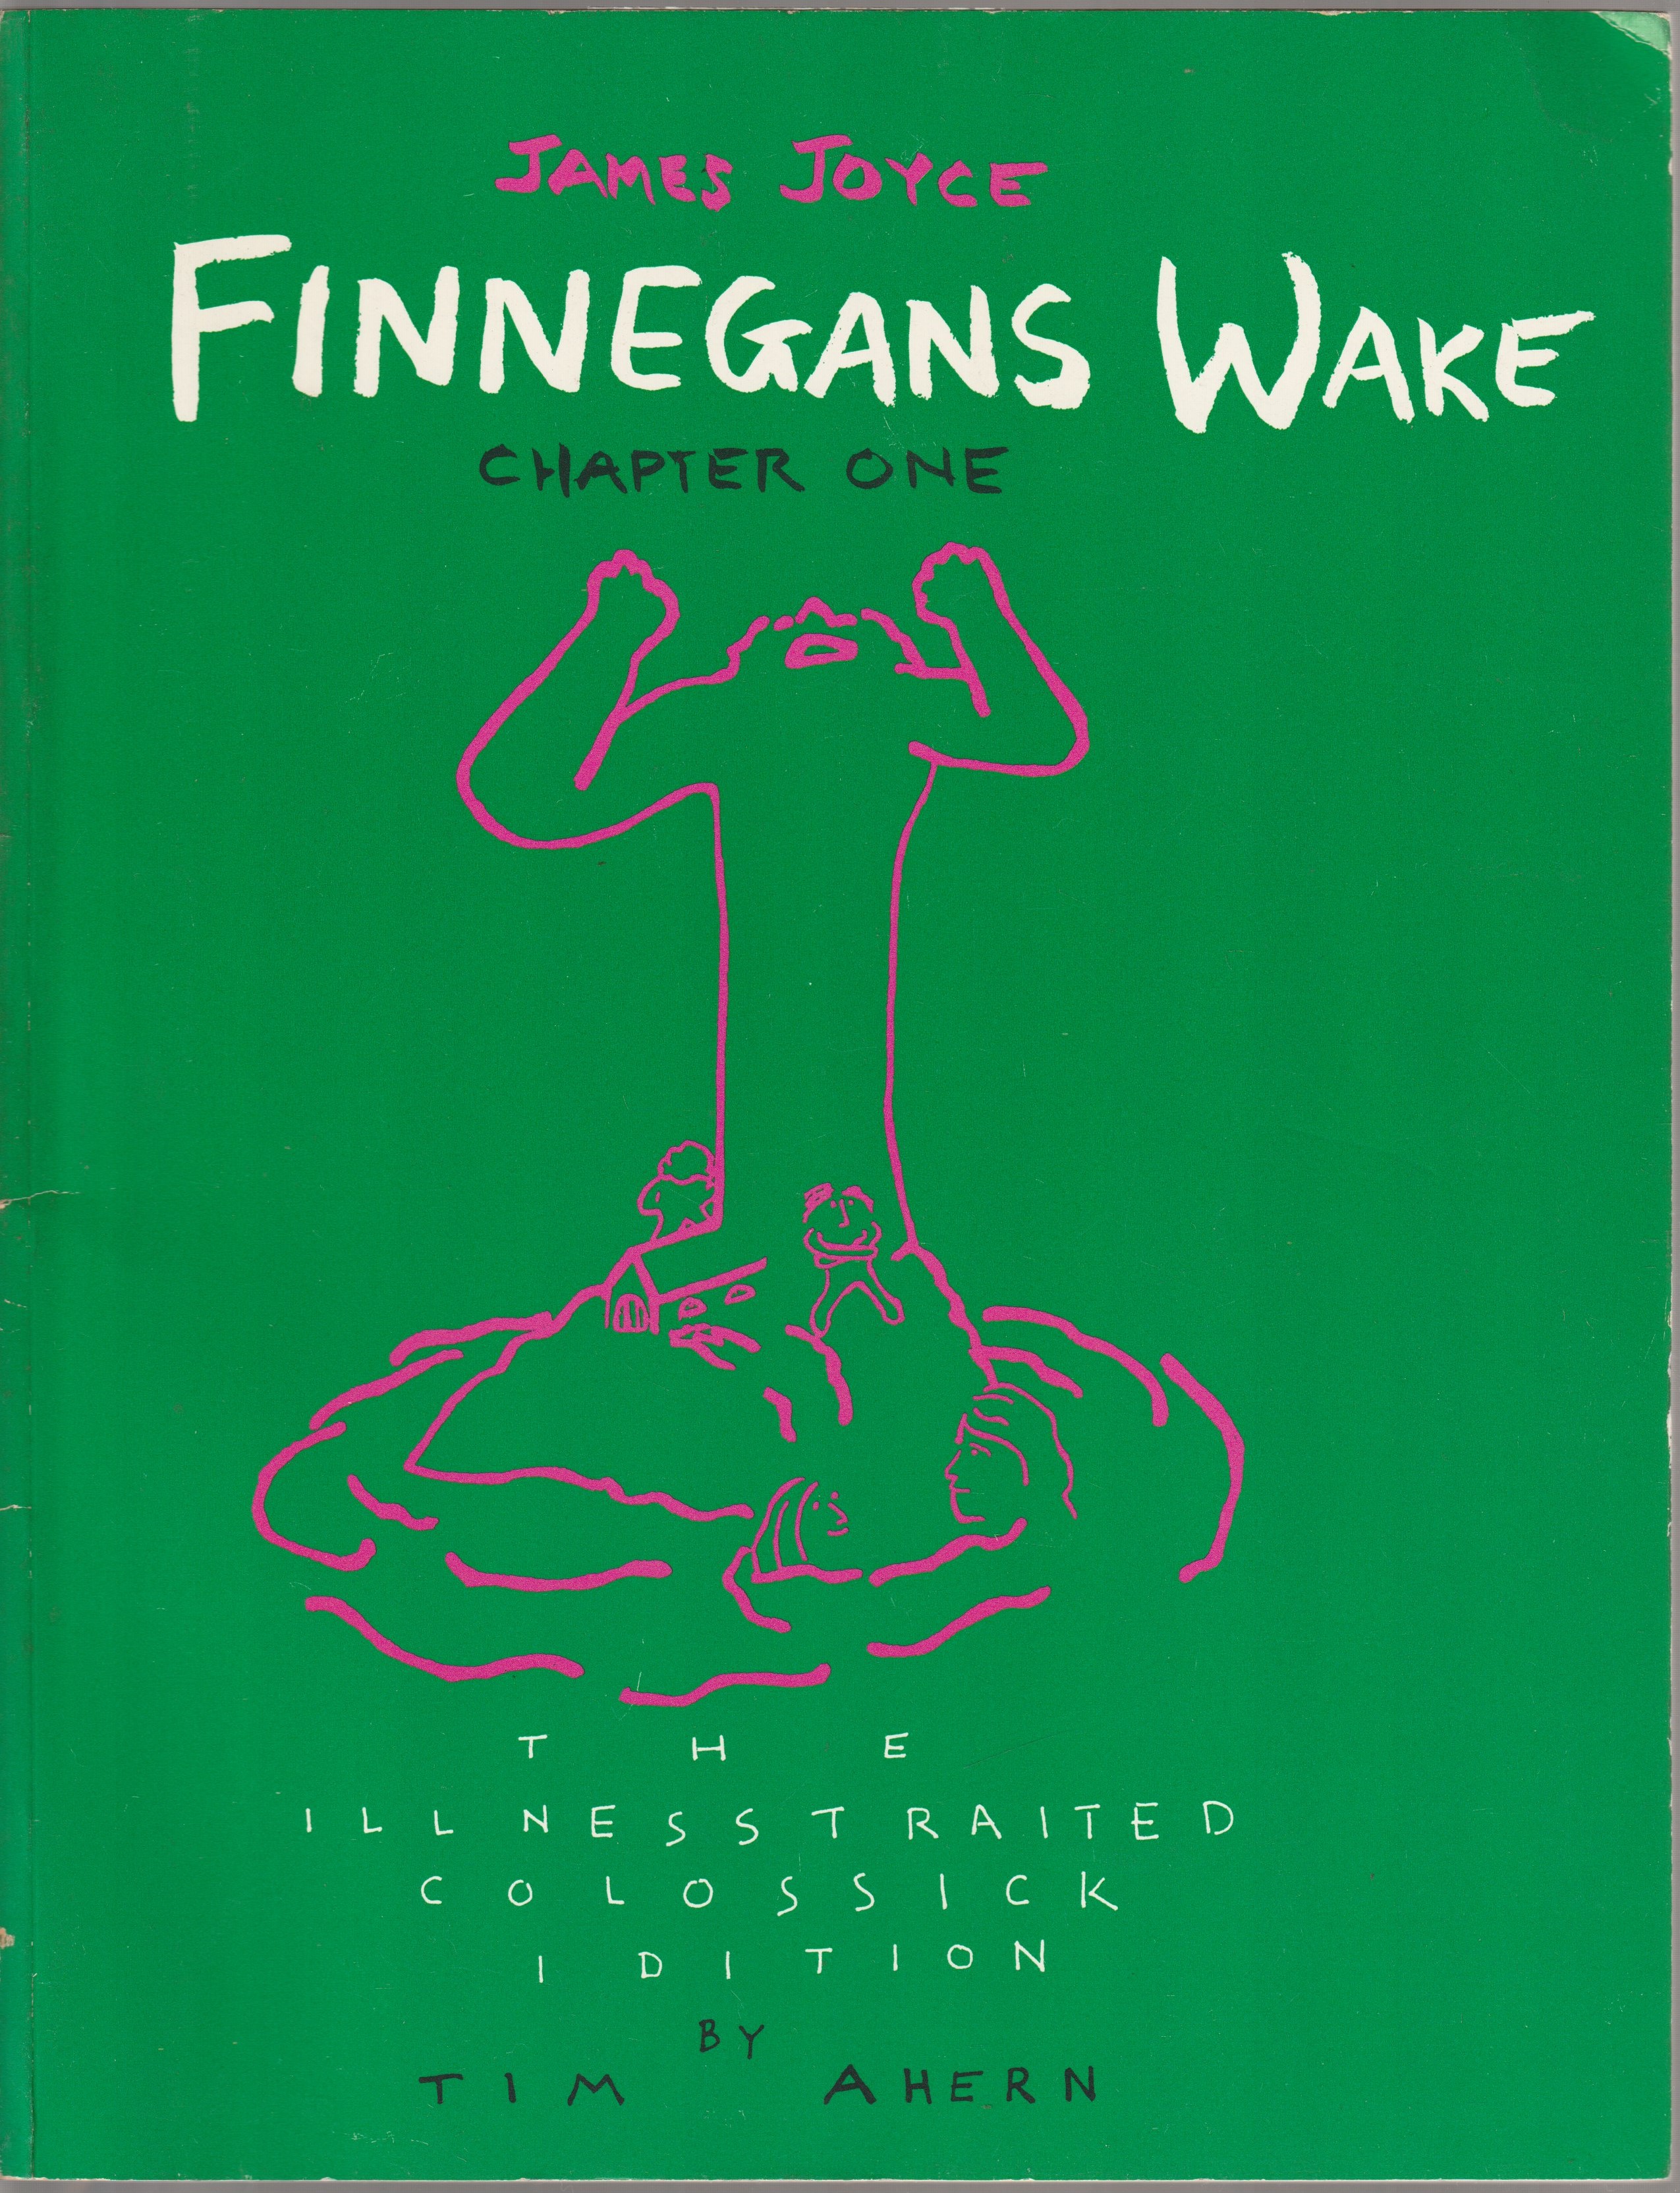 Finnegans wake, chapter one